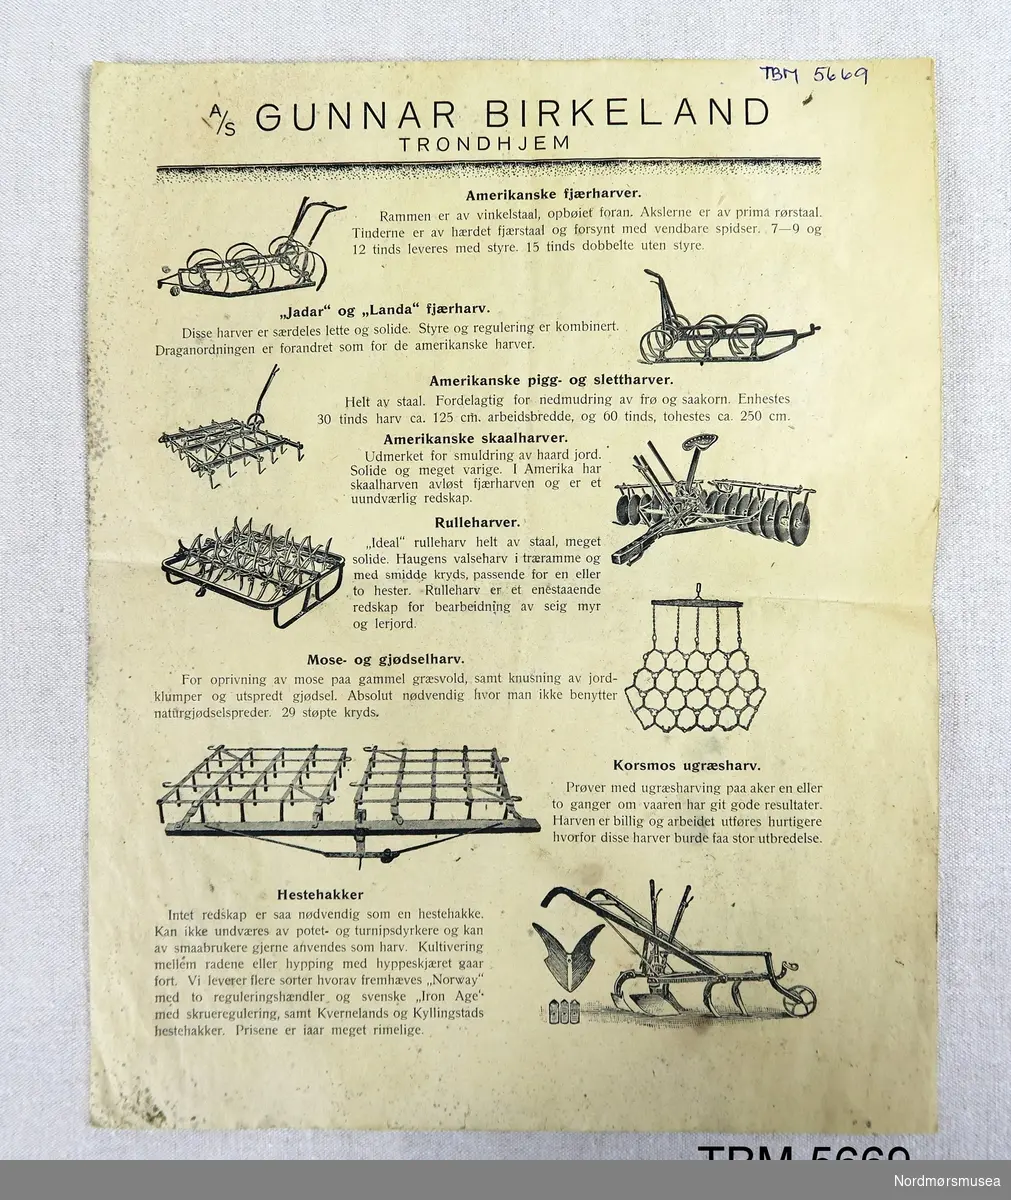 Reklameark på fire sider med reklame for jordbruksredskap og hestevogner fra Gunnar Birkeland i Trondheim.